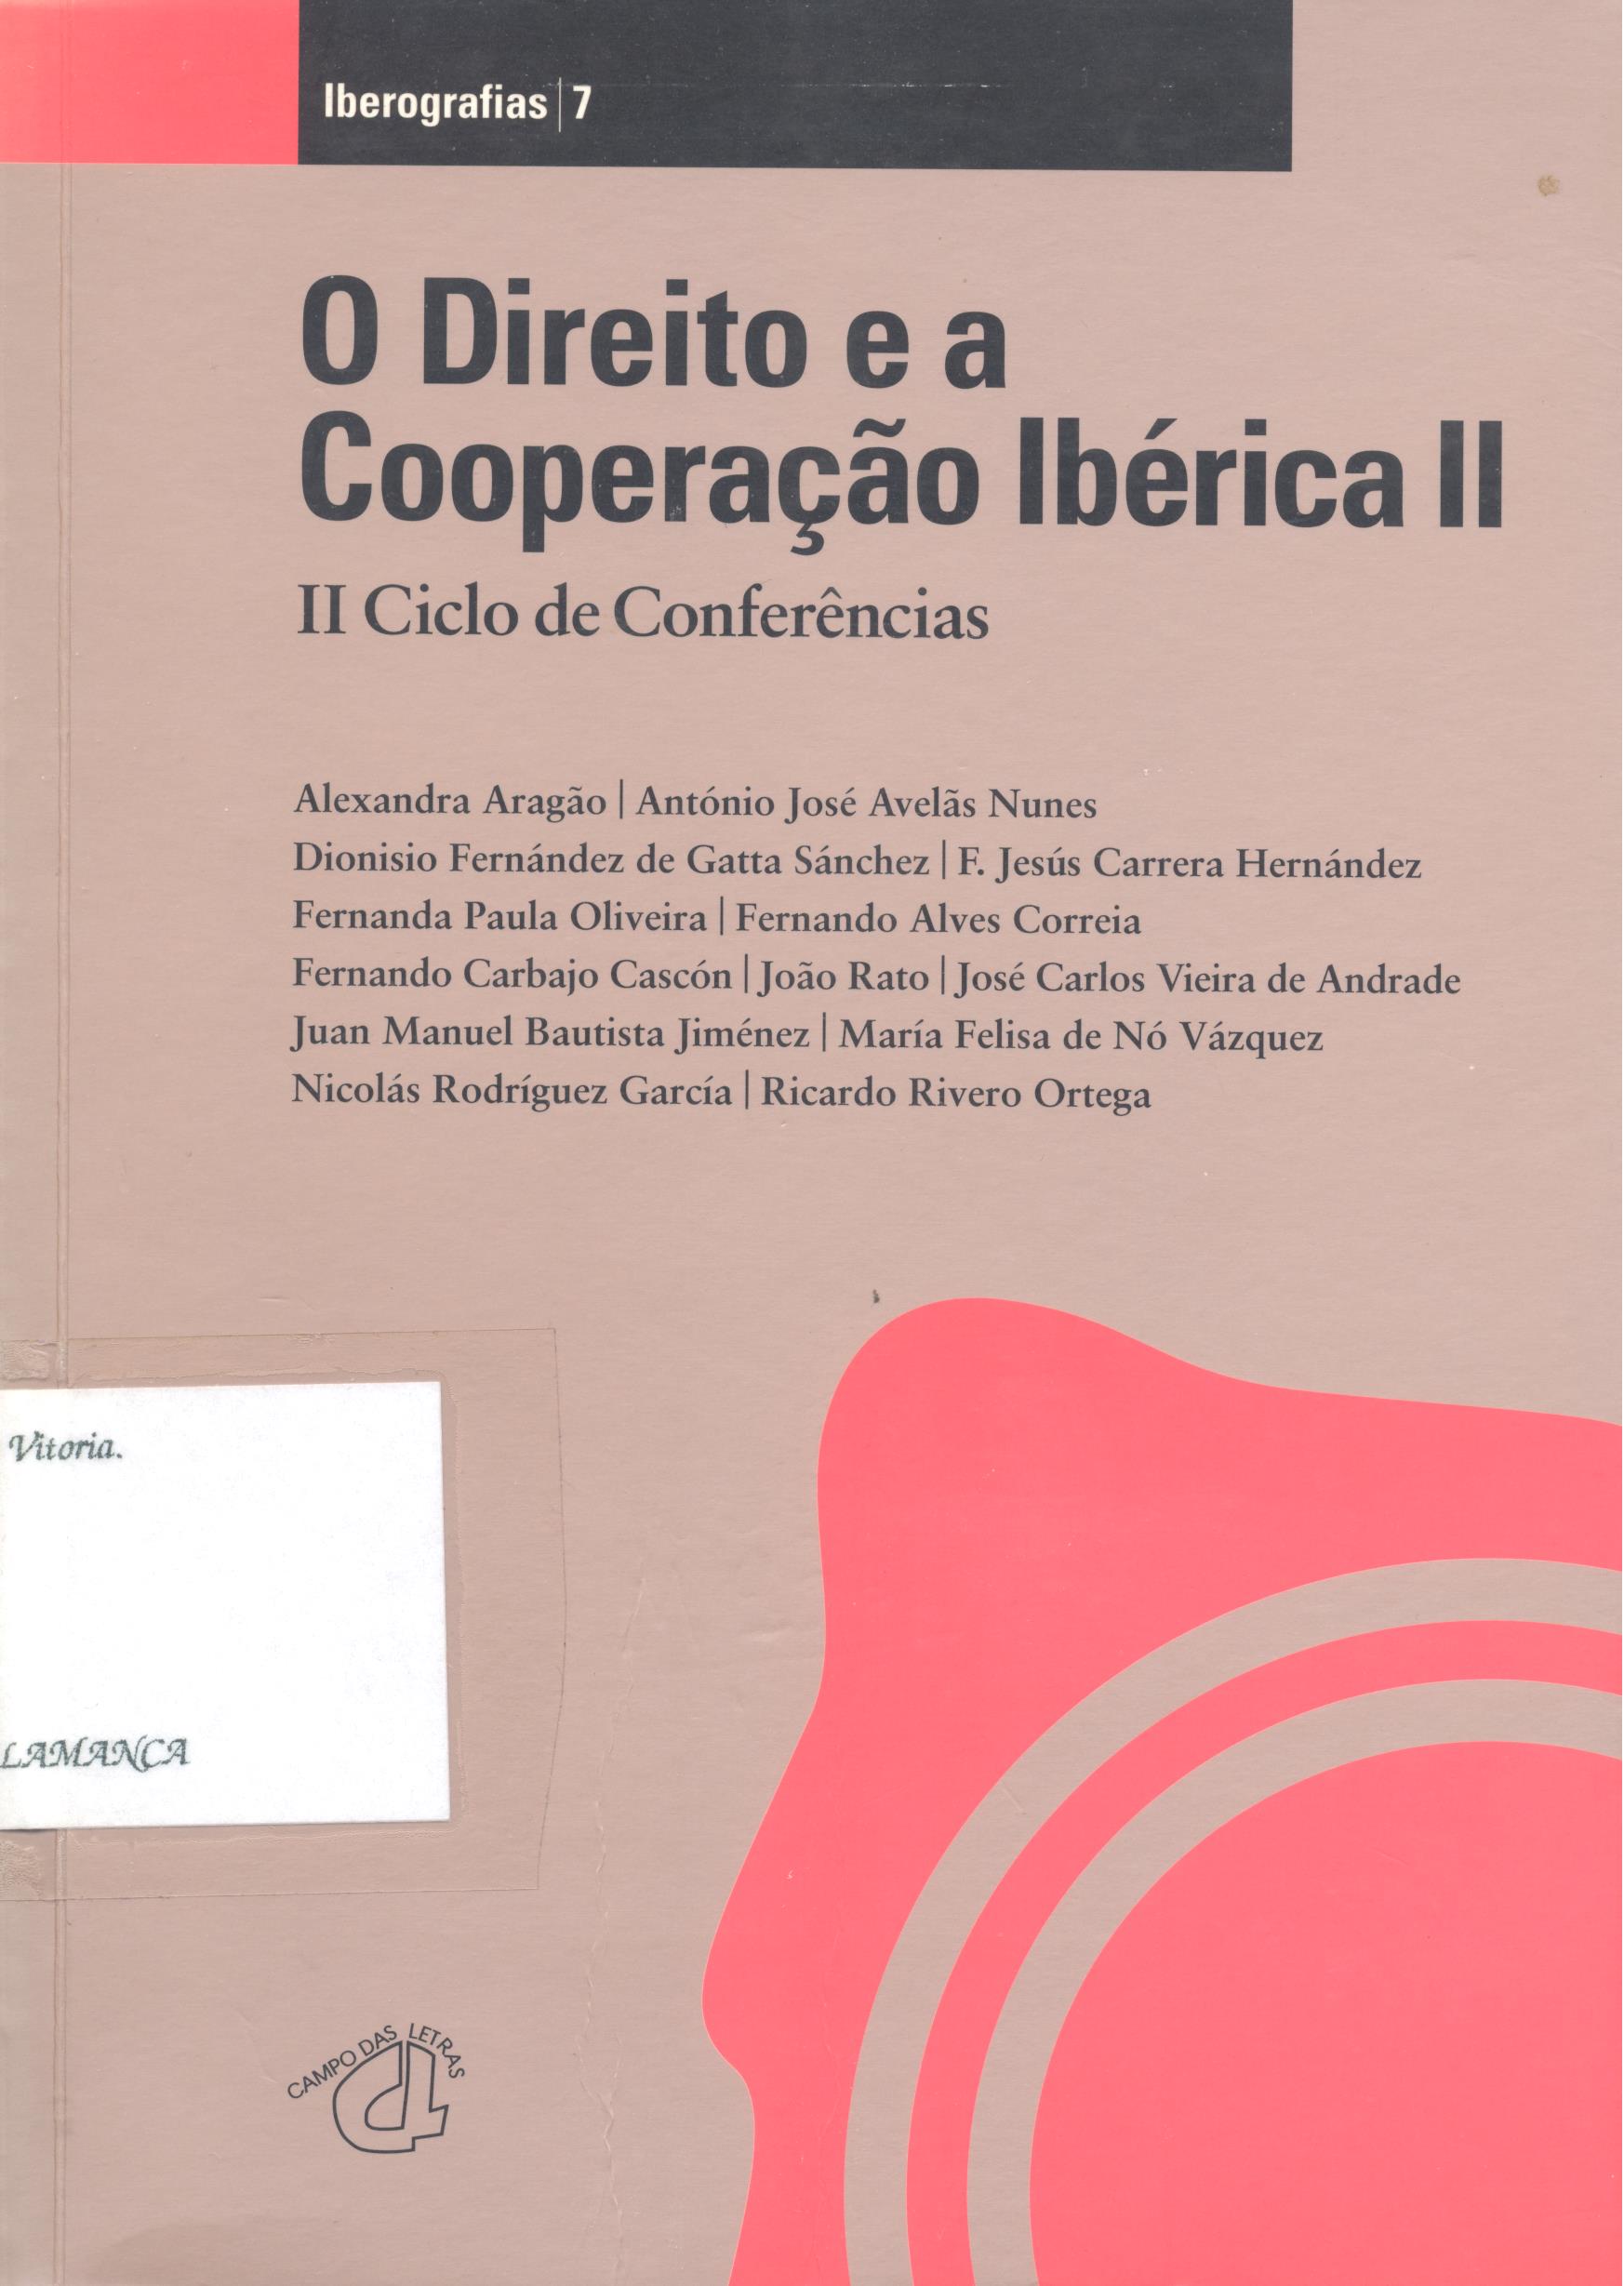 Imagen de portada del libro O direito e a cooperação ibérica